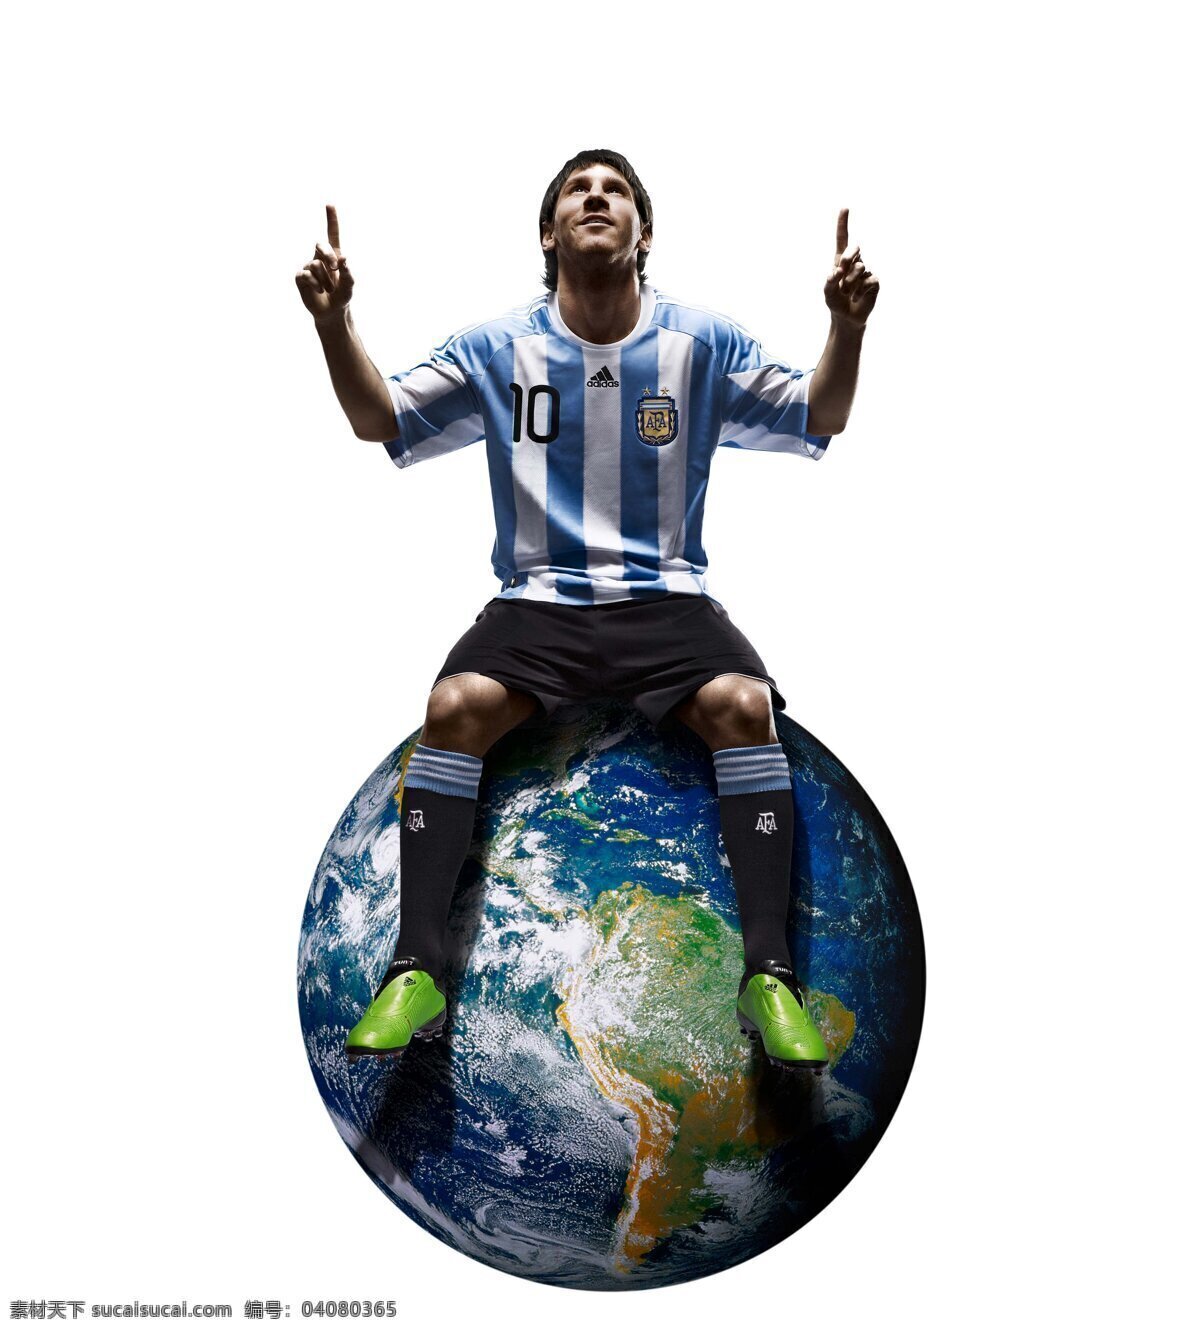 梅西 巴萨 足球 巨星 世界杯 世界杯巨星 偶像 足球巨星 阿根廷 美洲 灵魂 中场 国家队 俱乐部 运动员 南非世界杯 欧冠 冠军 西甲 南非 明星偶像 人物图库